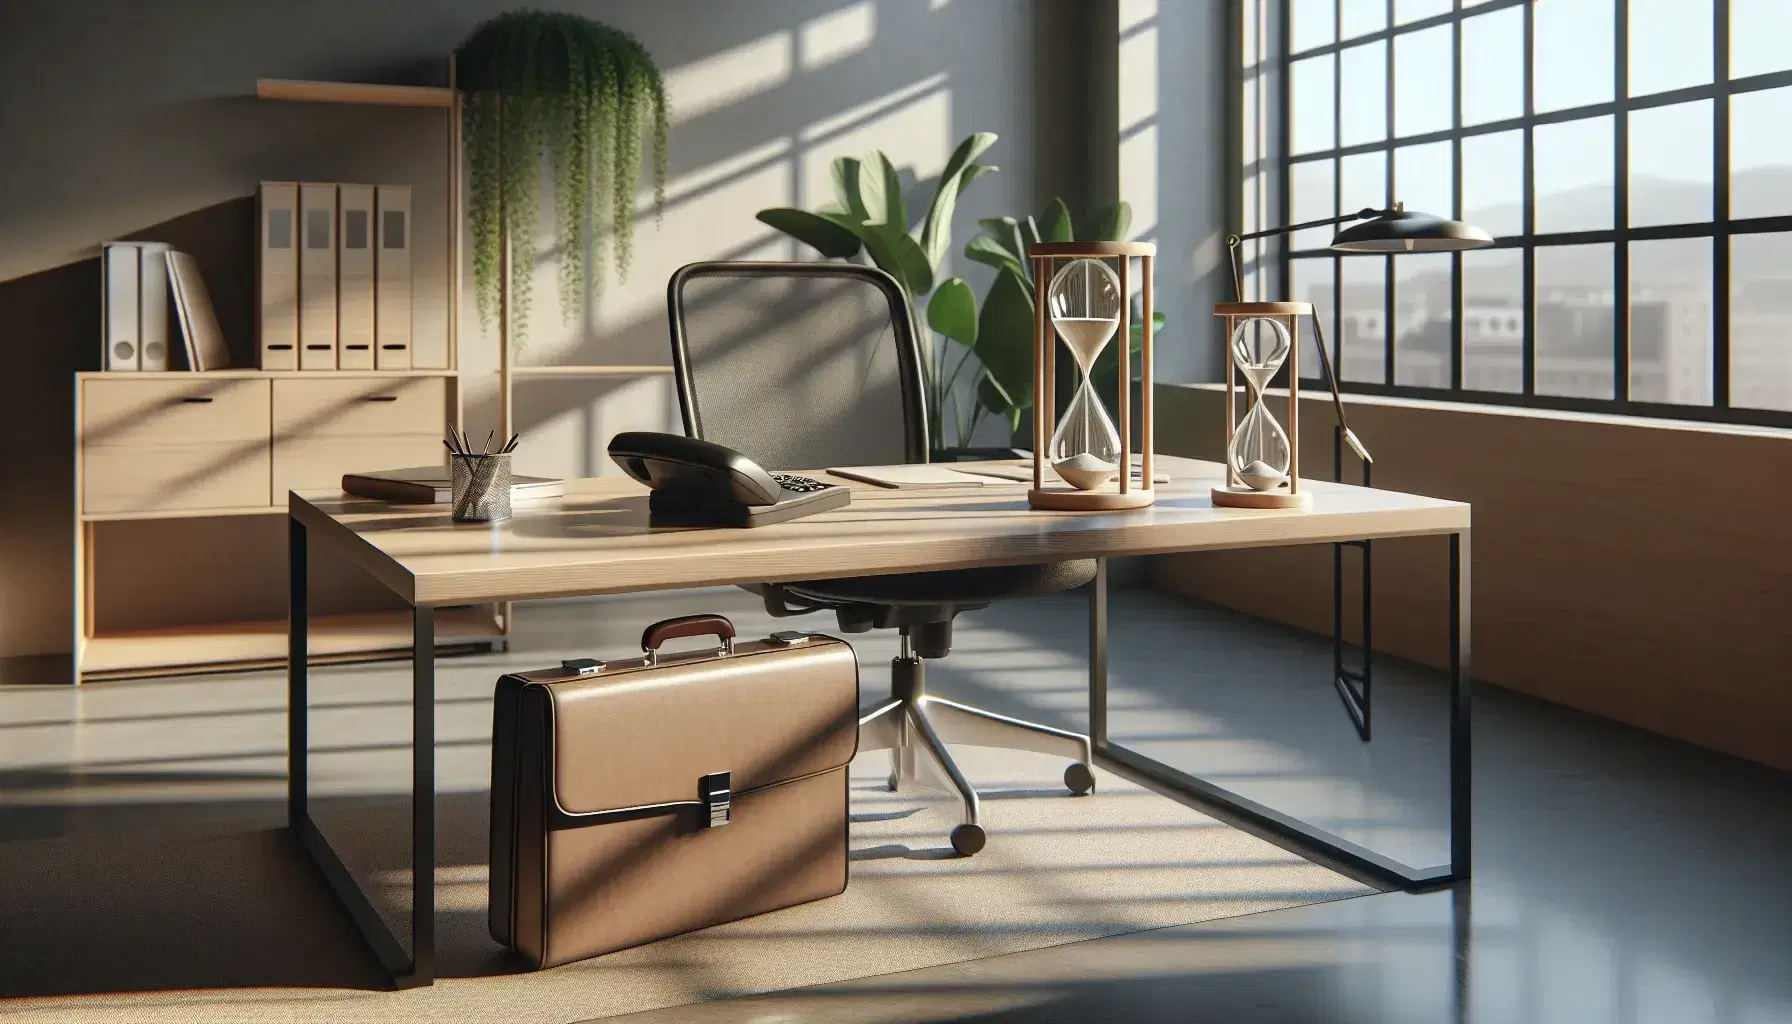 Oficina moderna iluminada con mesa de trabajo de madera, maletín de cuero, teléfono negro, reloj de arena y silla ergonómica, junto a planta interior y papelera.